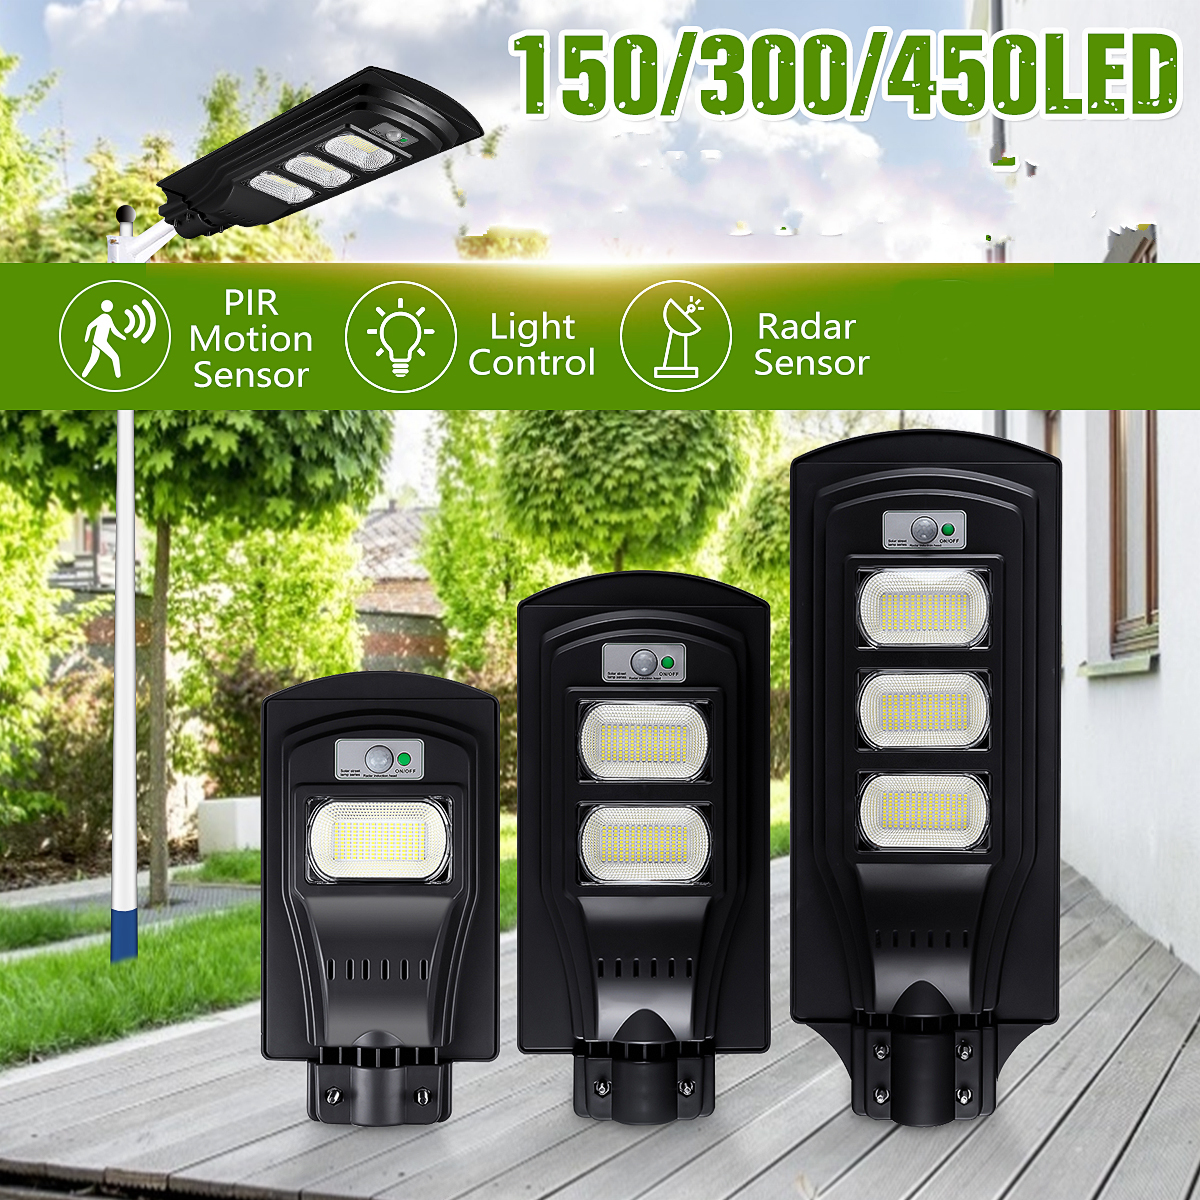 150300450LED-Solar-Light-Black-Shell-Street-Lamp-2835SMD-Waterproof-PIR-Motion-Sensor-Garden-Lightin-1695784-1